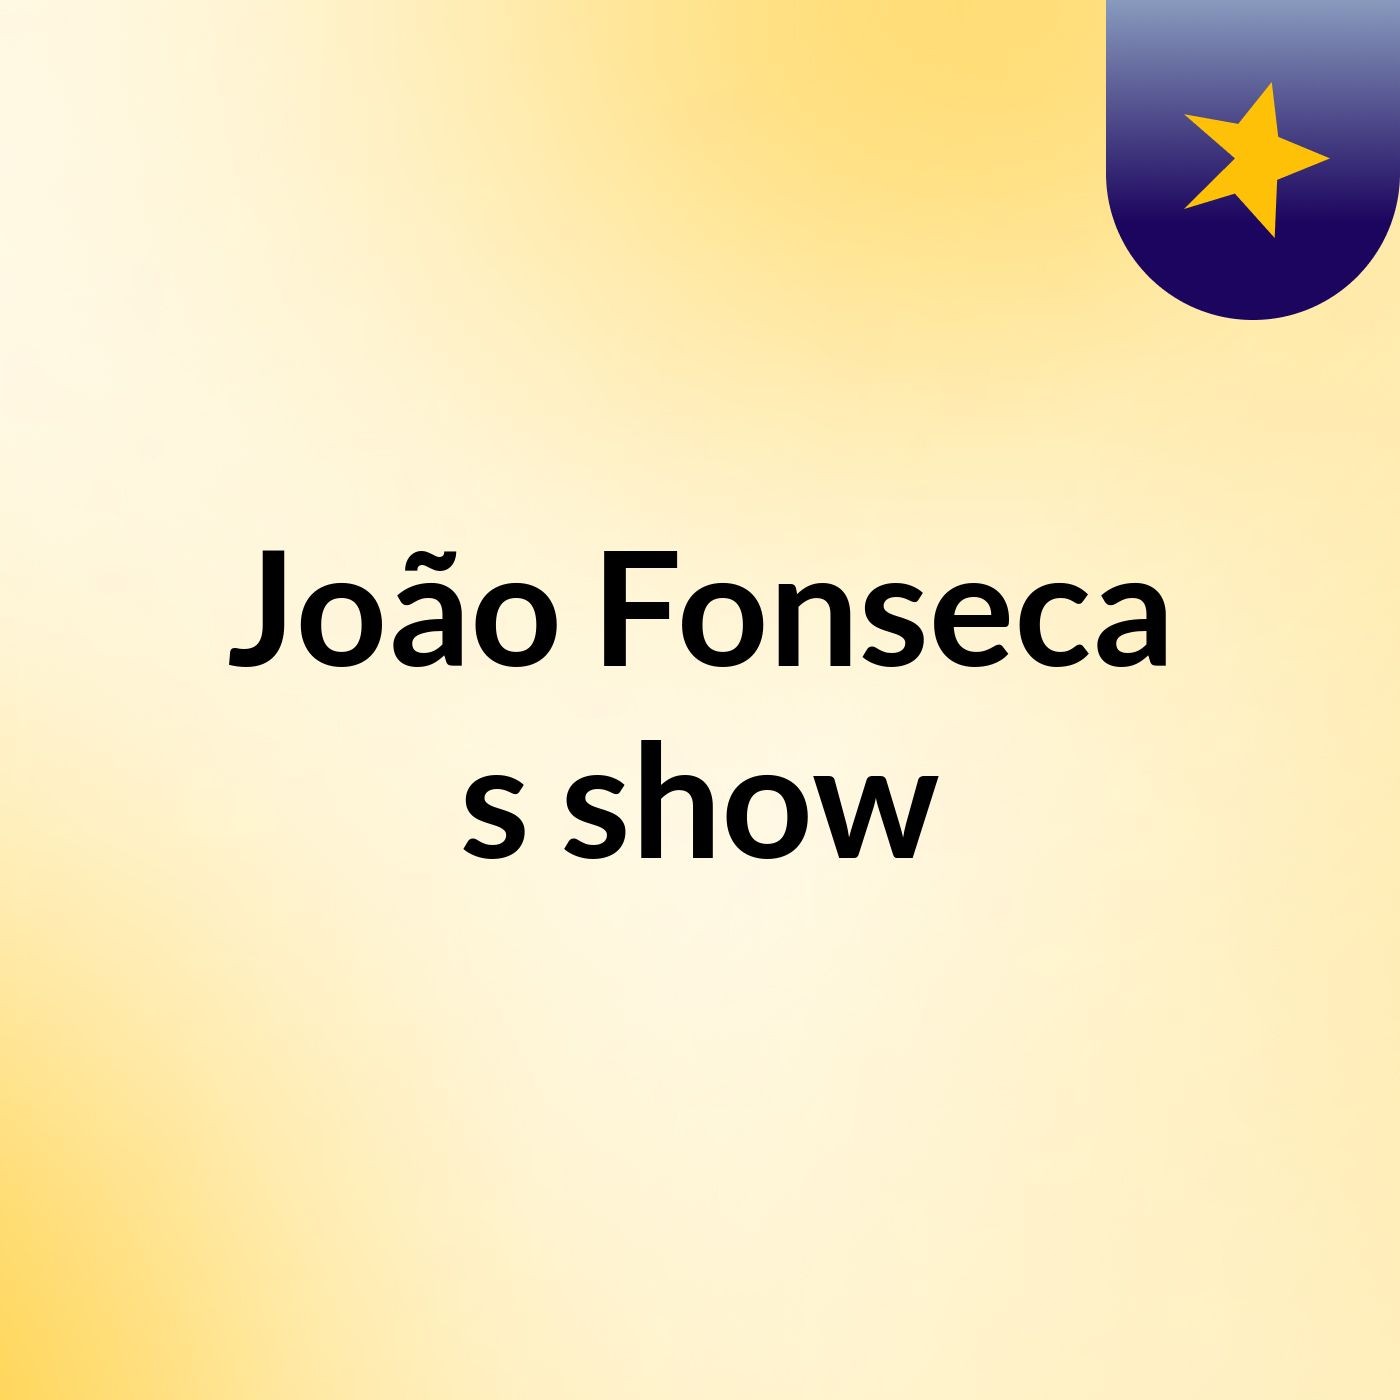 João Fonseca's show